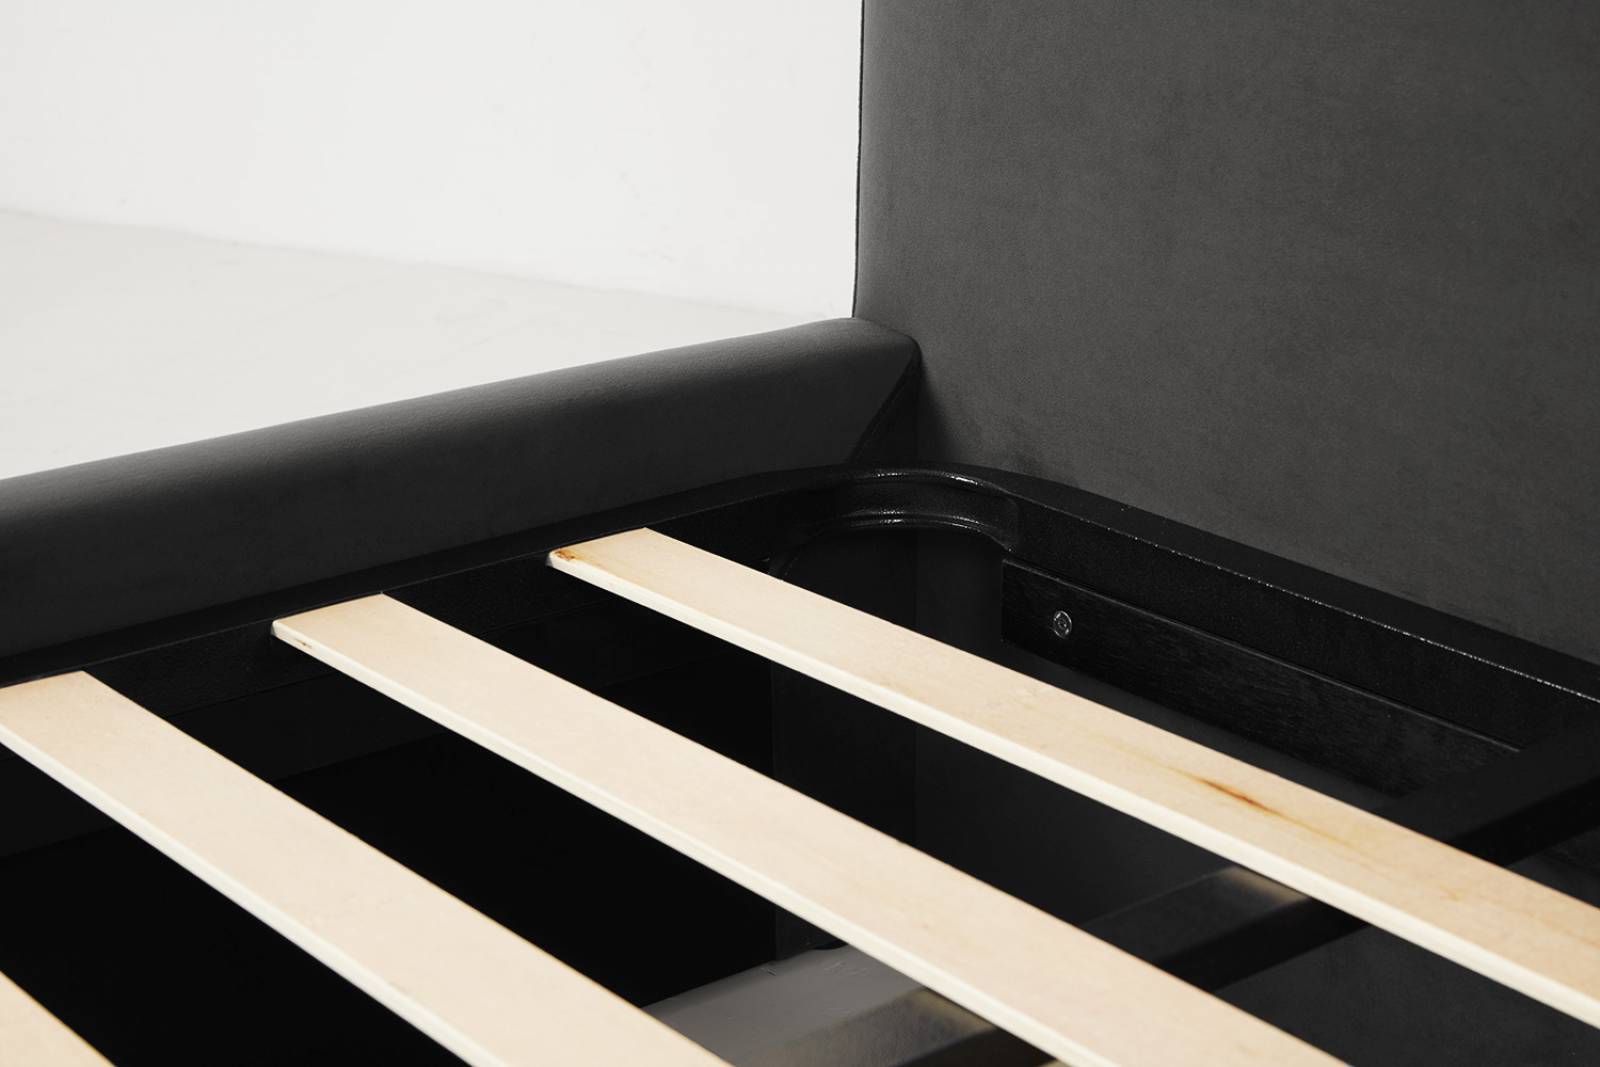 Swyft Bed 01 - Super King Size Bed Frame - Velvet Charcoal thumbnails